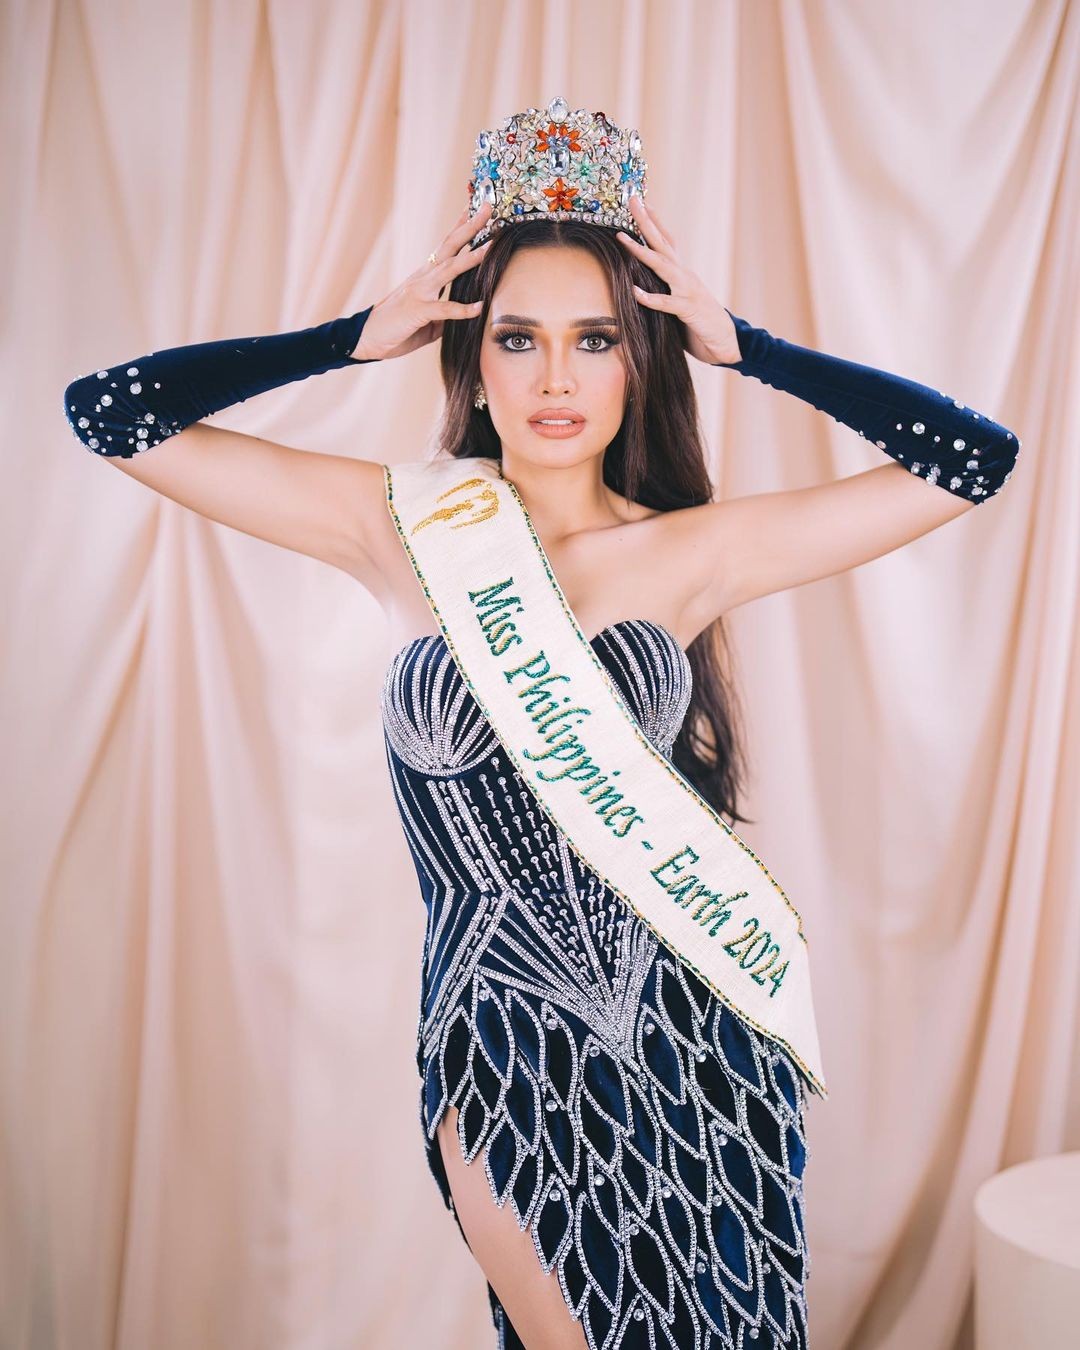 Người đẹp Philippines cao 1,76 m sang Việt Nam thi hoa hậu